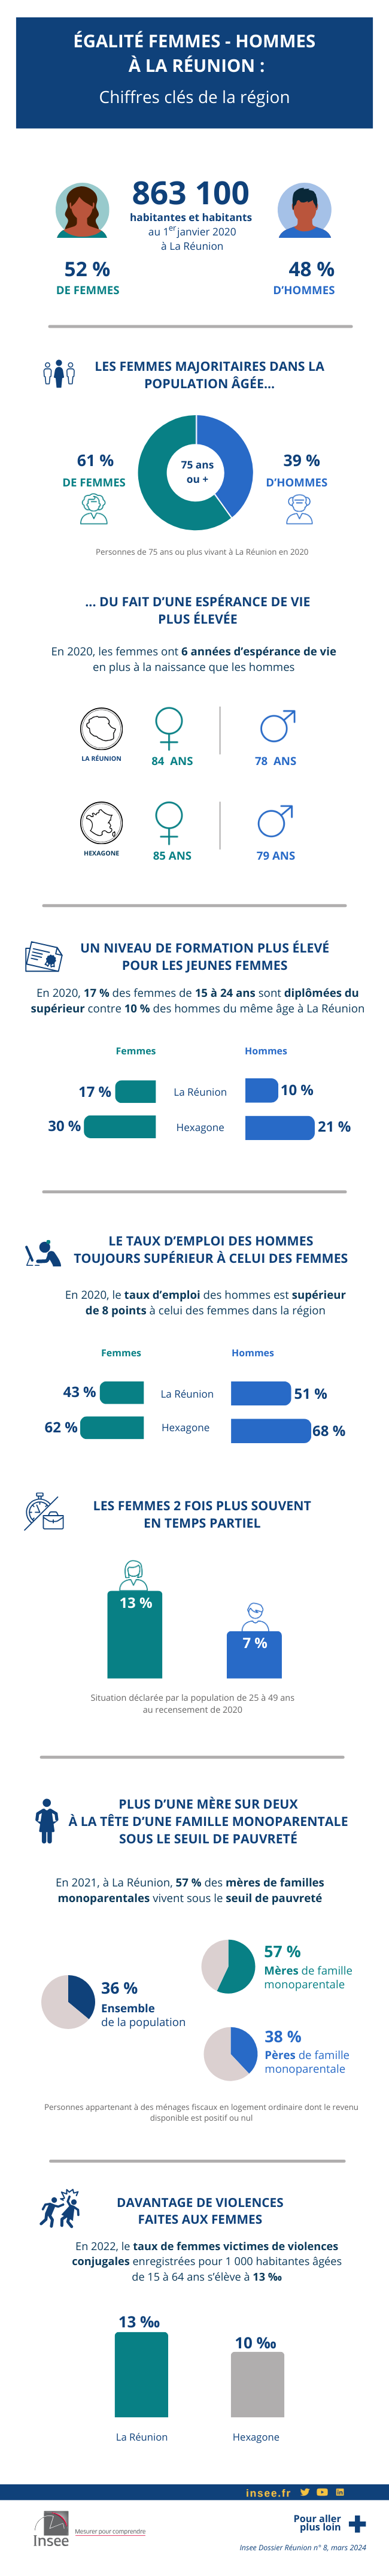 Égalité femmes-hommes : les chiffres clés de La Réunion